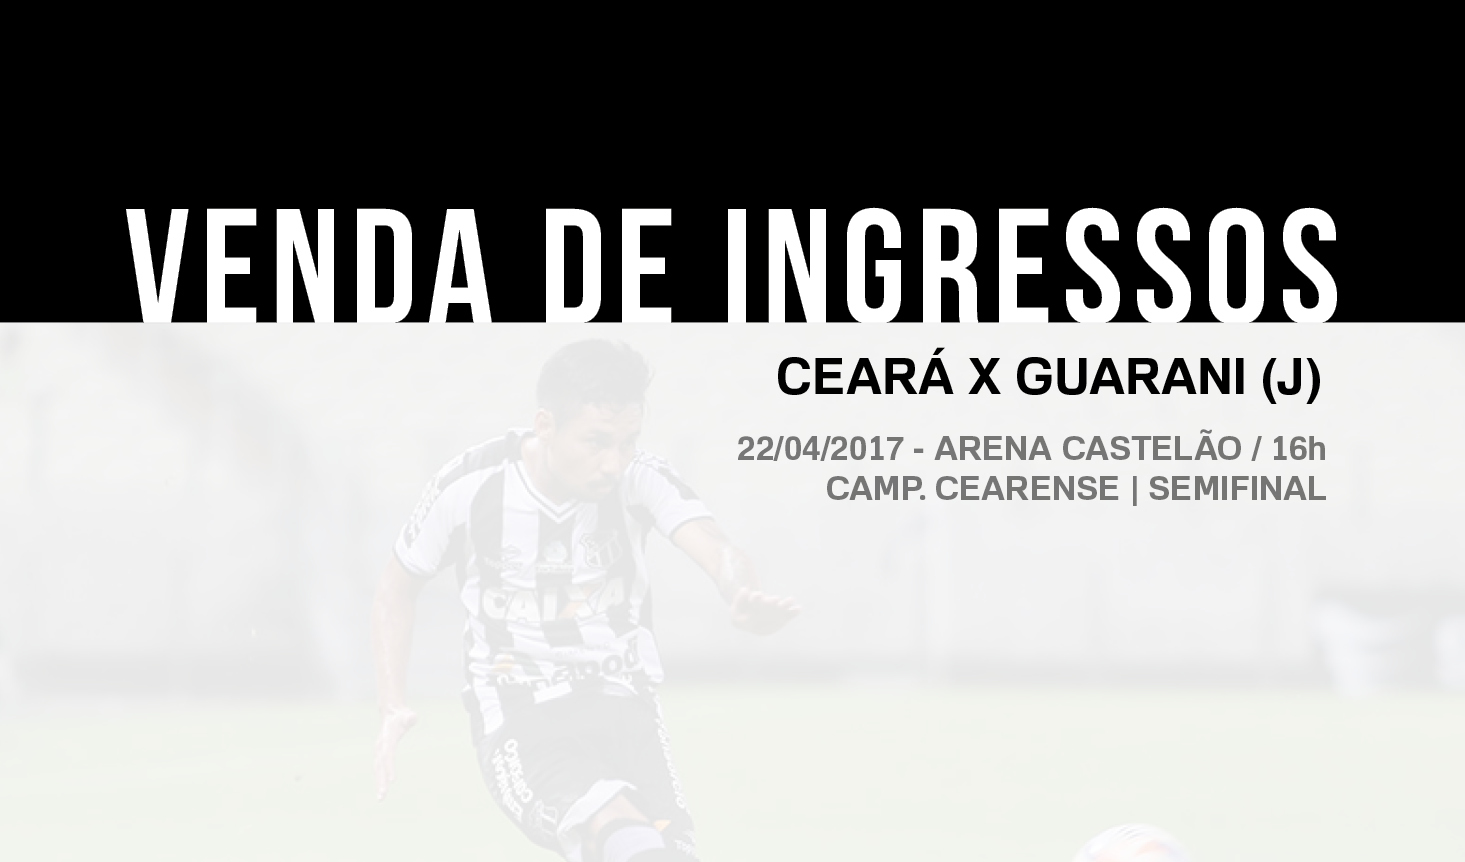 Confira informações sobre a venda de ingressos para Ceará x Guarani (J)